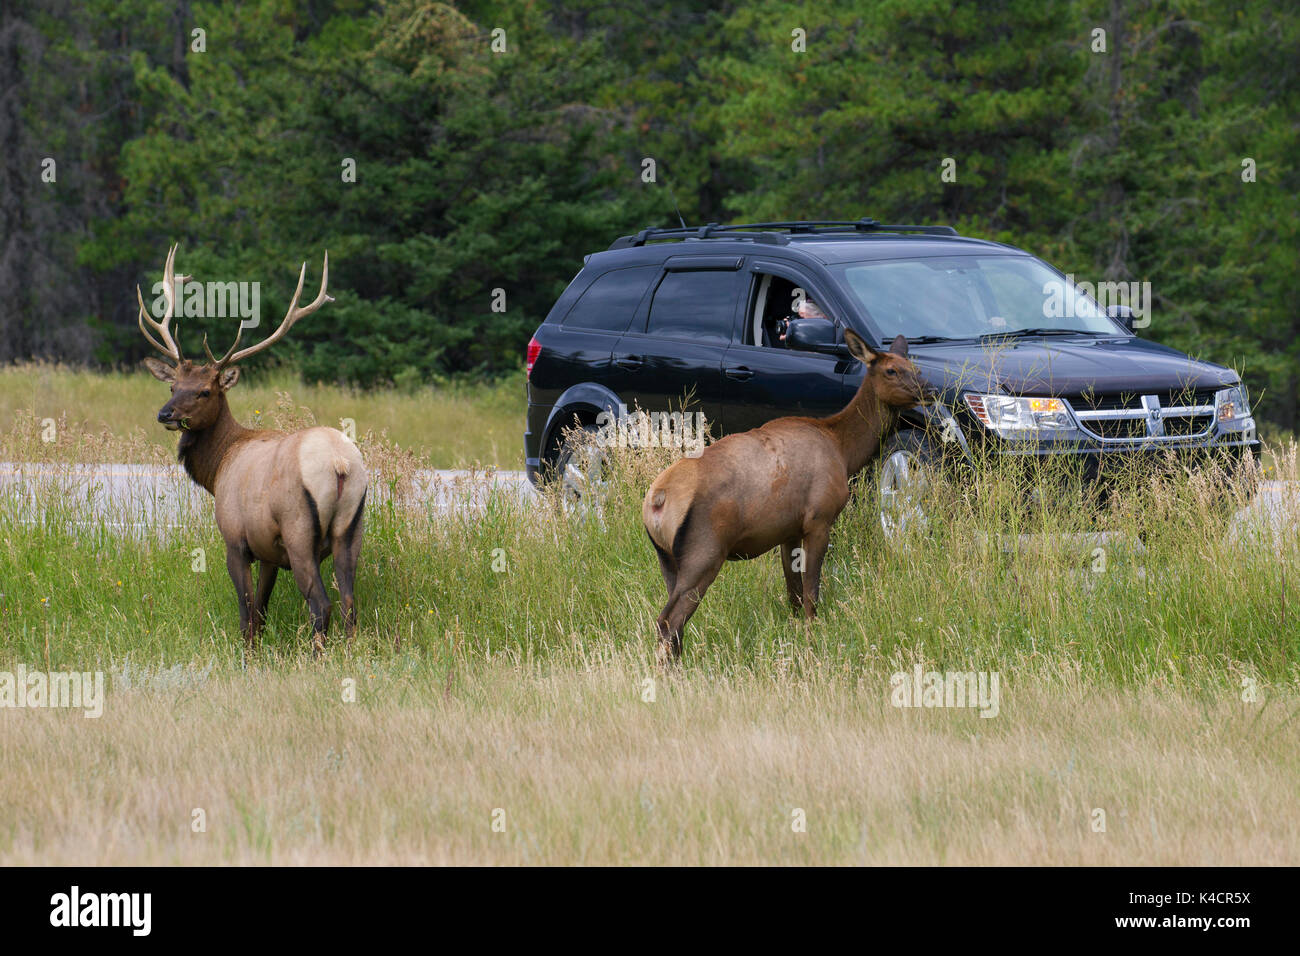 Voiture de tourisme dans la prise de photos d'elk / wapitis (Cervus canadensis) près de road dans la saison de vacances en été, Jasper National Park, Alberta, Canada Banque D'Images